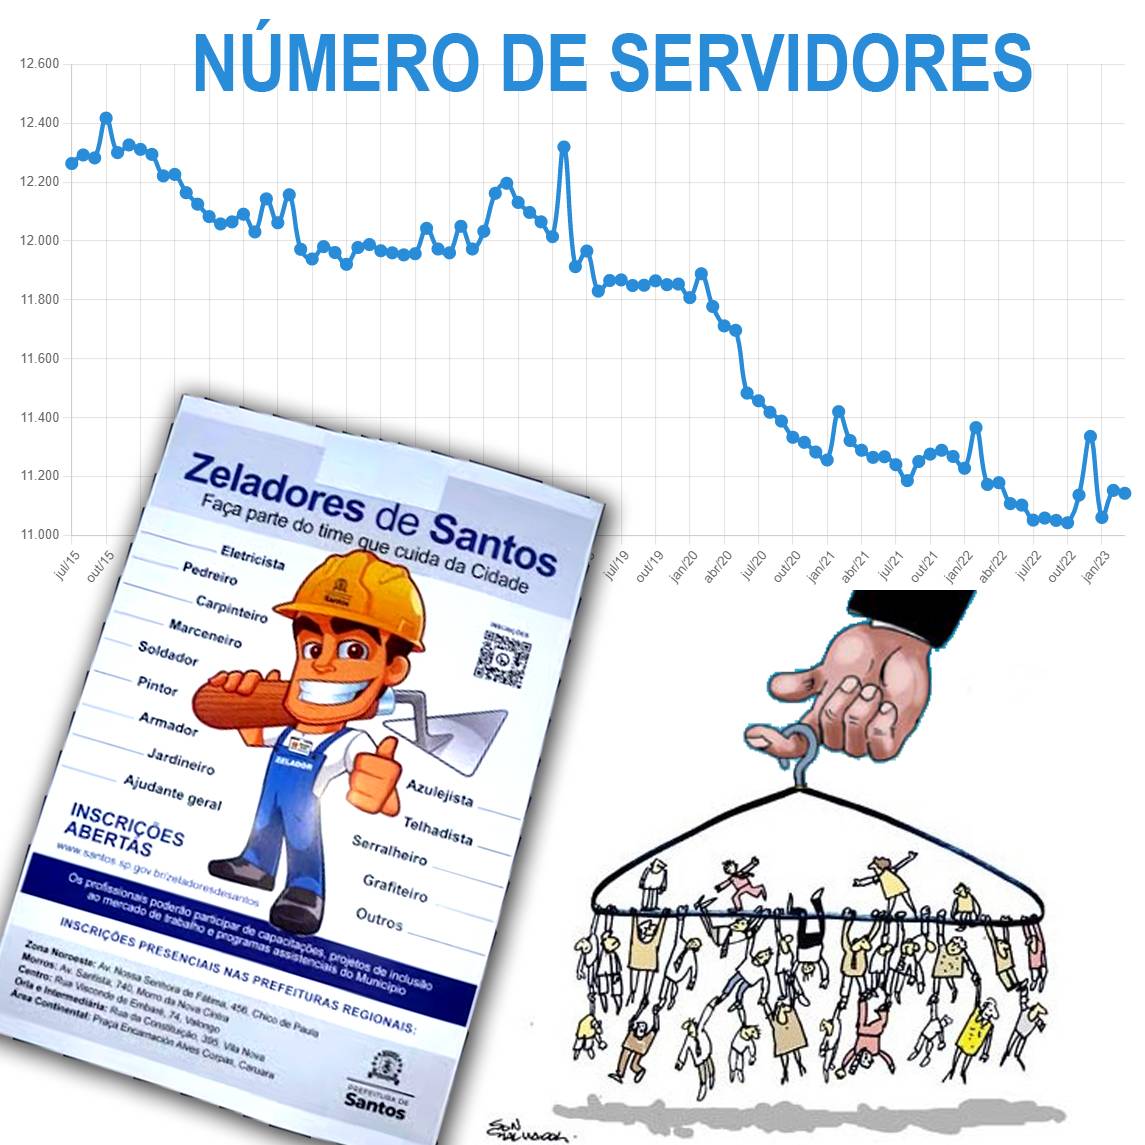 Montagem com o panfleto do programa "Zeladores de Santos", uma charge de cabide de emprego e o gráfico de número de servidores na Prefeitura de Santos desde julho de 2015, mostrando que esse número só cai.